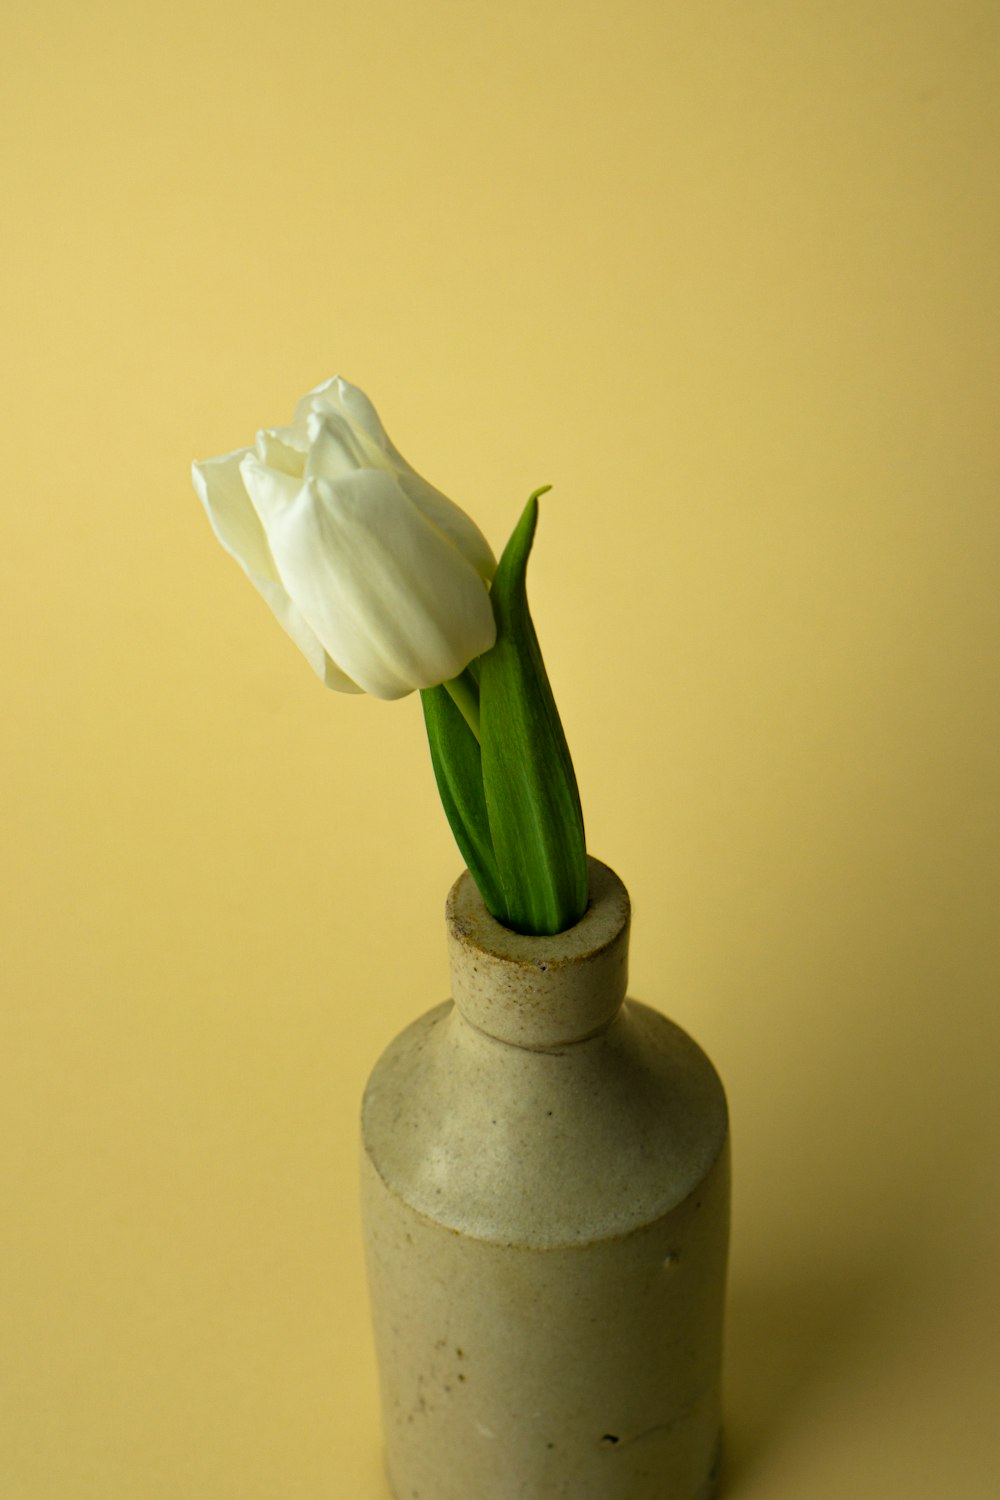 white flower in white ceramic vase